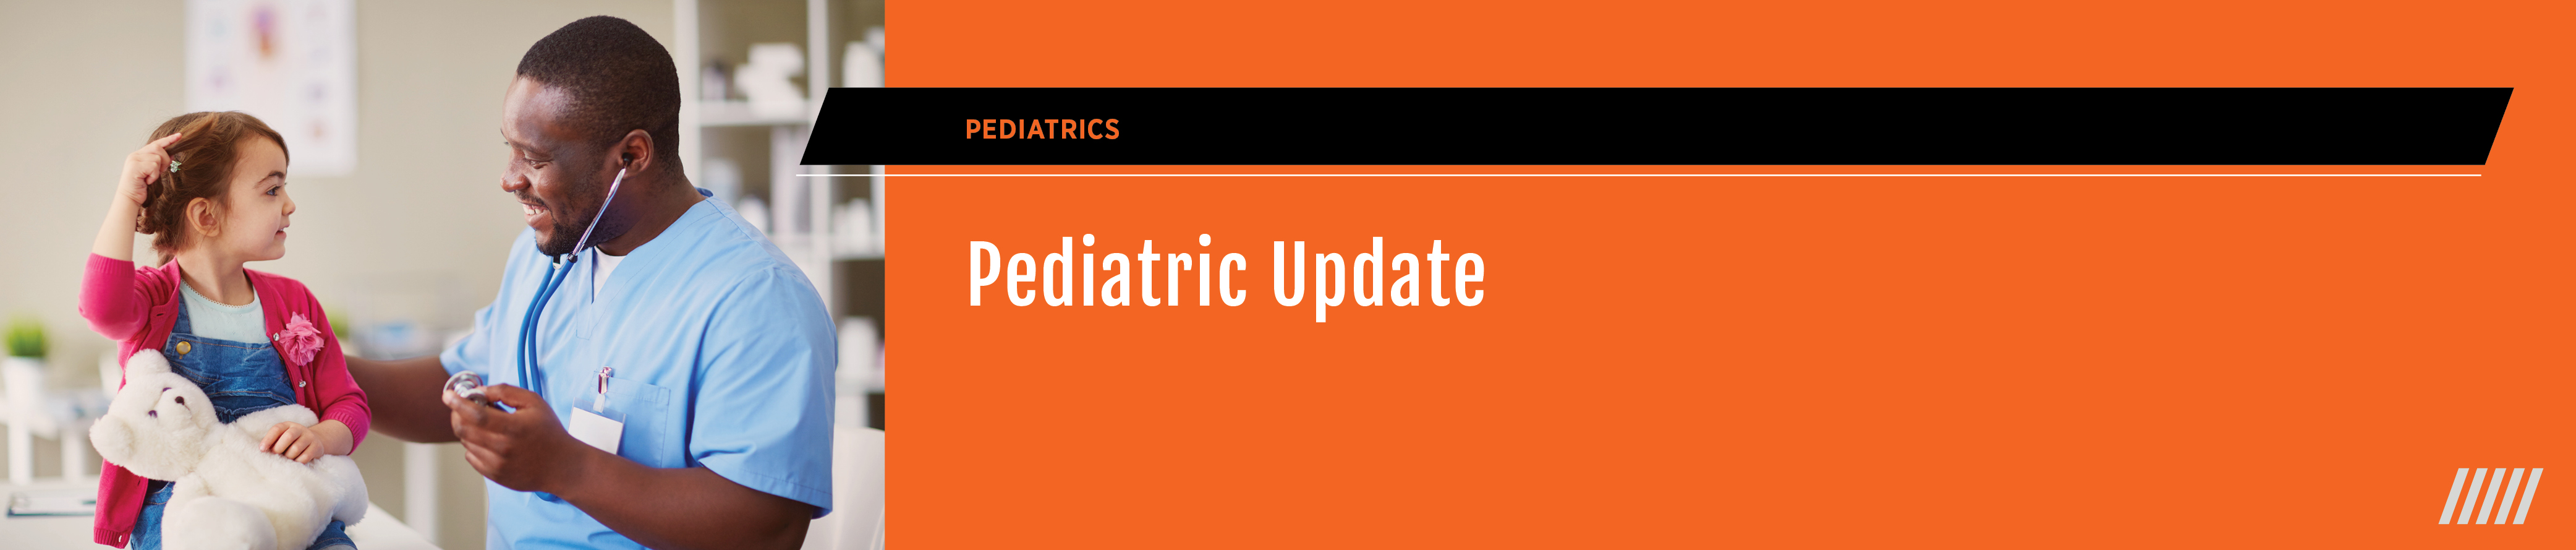 Pediatric Update Banner